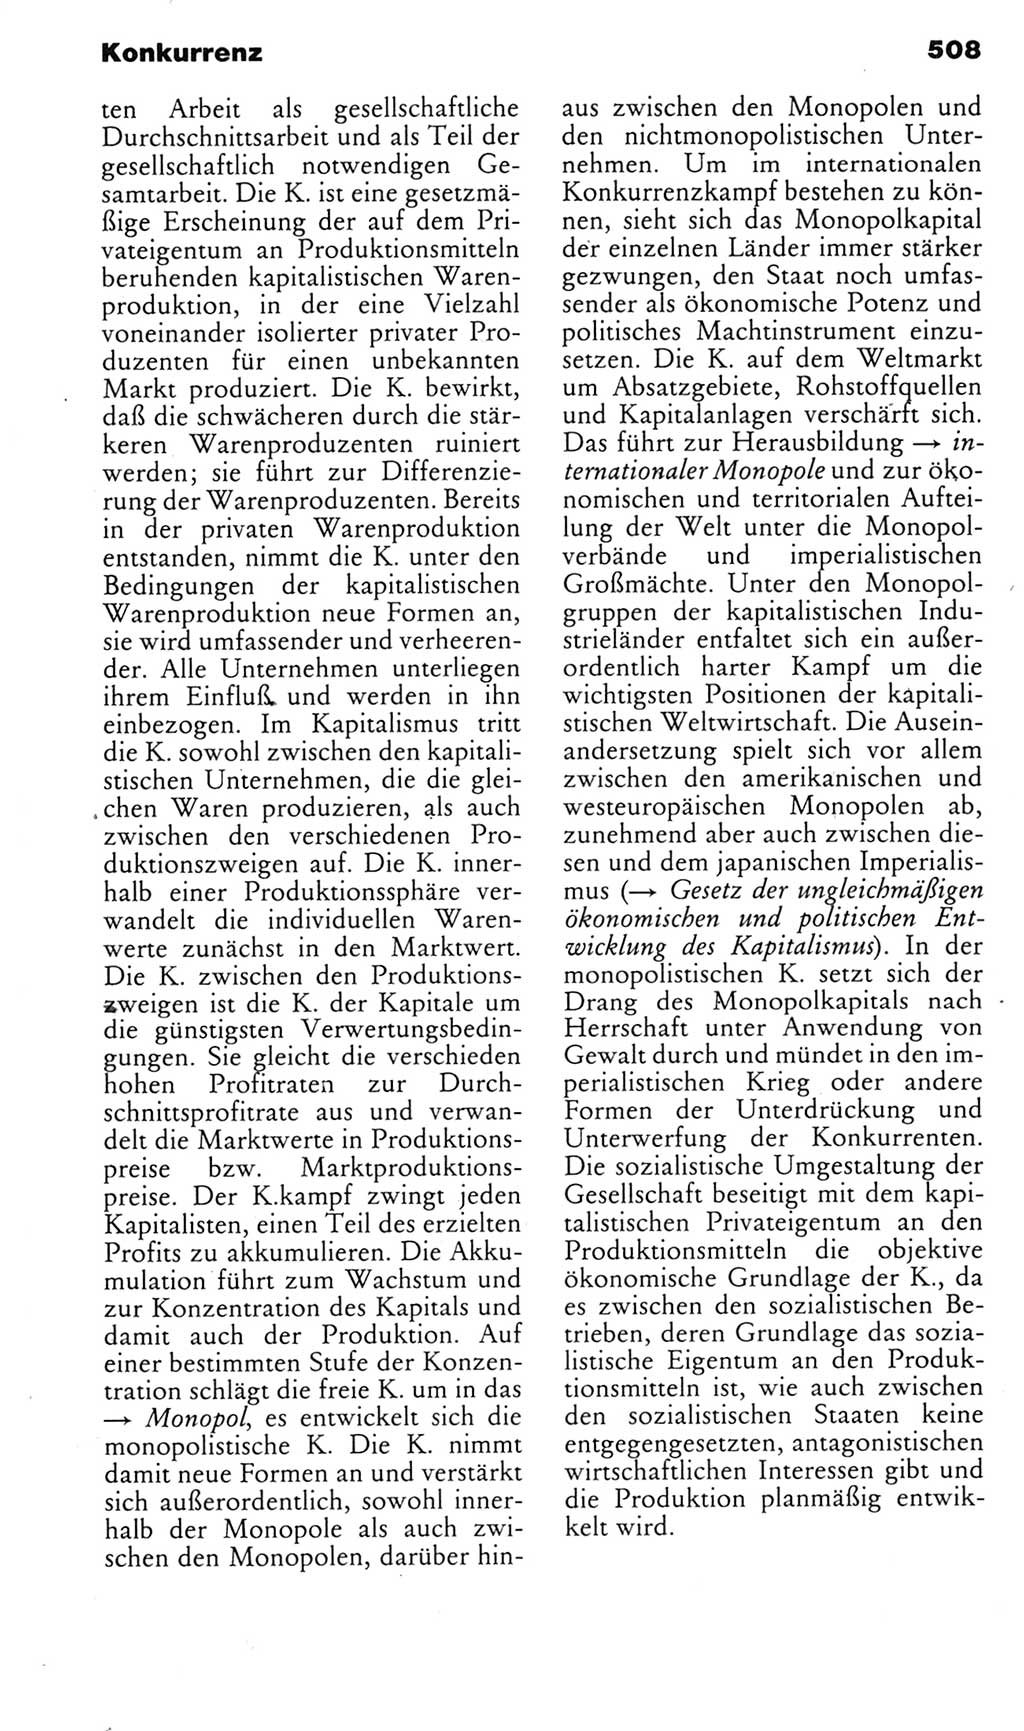 Kleines politisches Wörterbuch [Deutsche Demokratische Republik (DDR)] 1985, Seite 508 (Kl. pol. Wb. DDR 1985, S. 508)